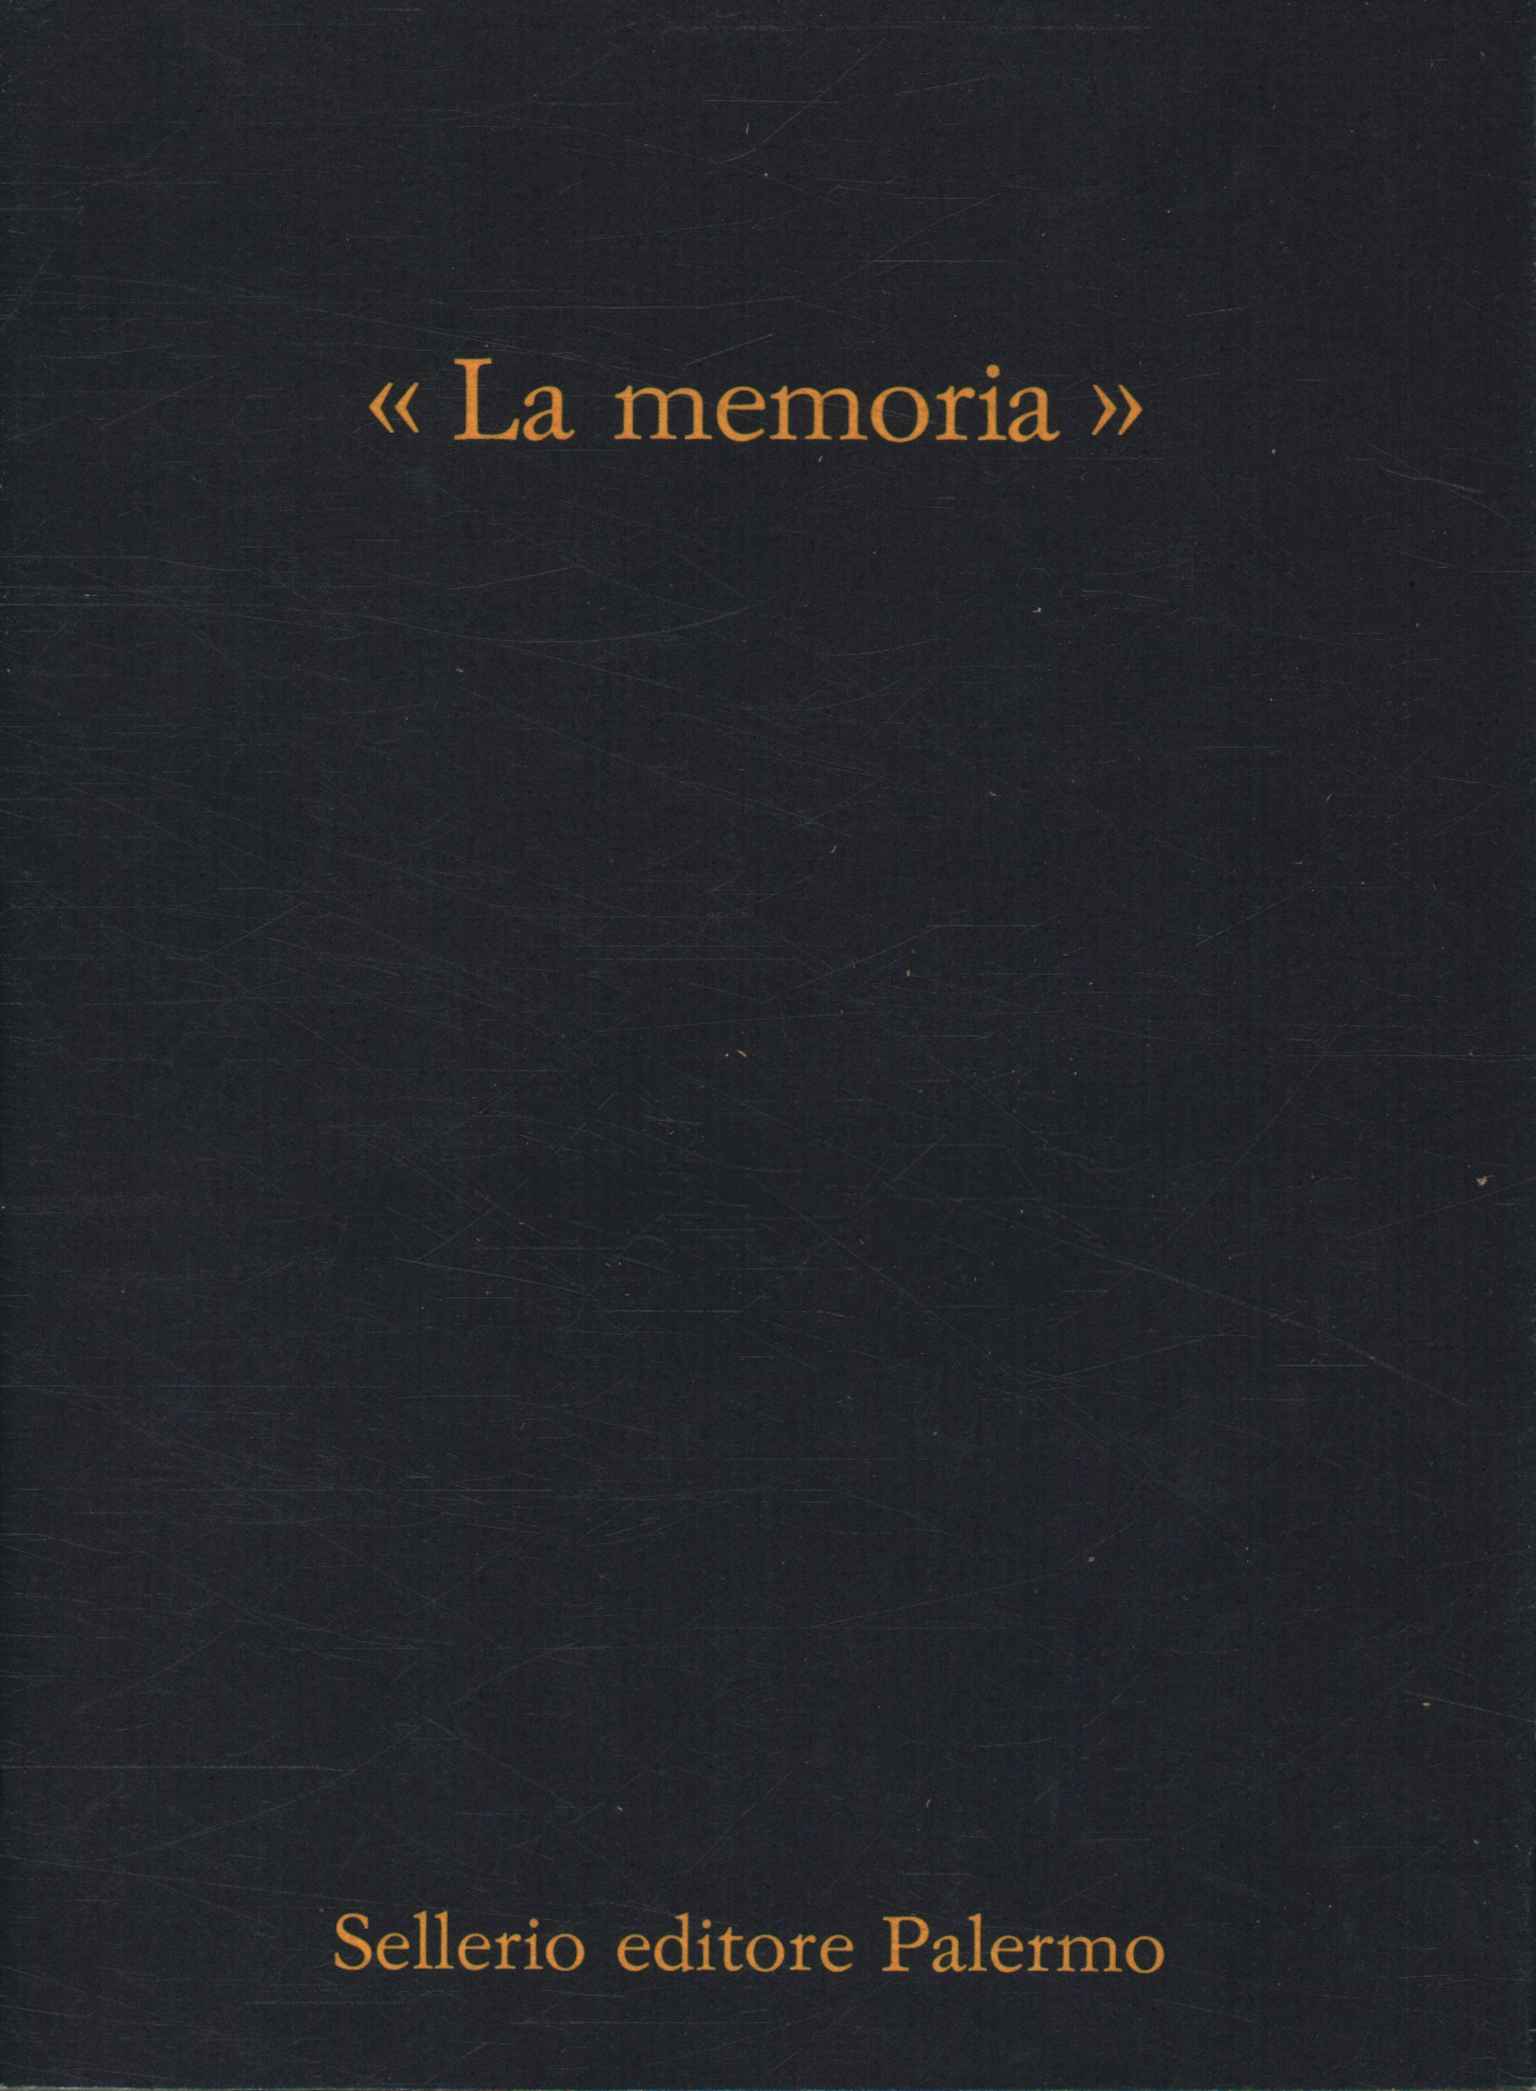 Mémoire (1979-1989), Mémoire 1979-1989